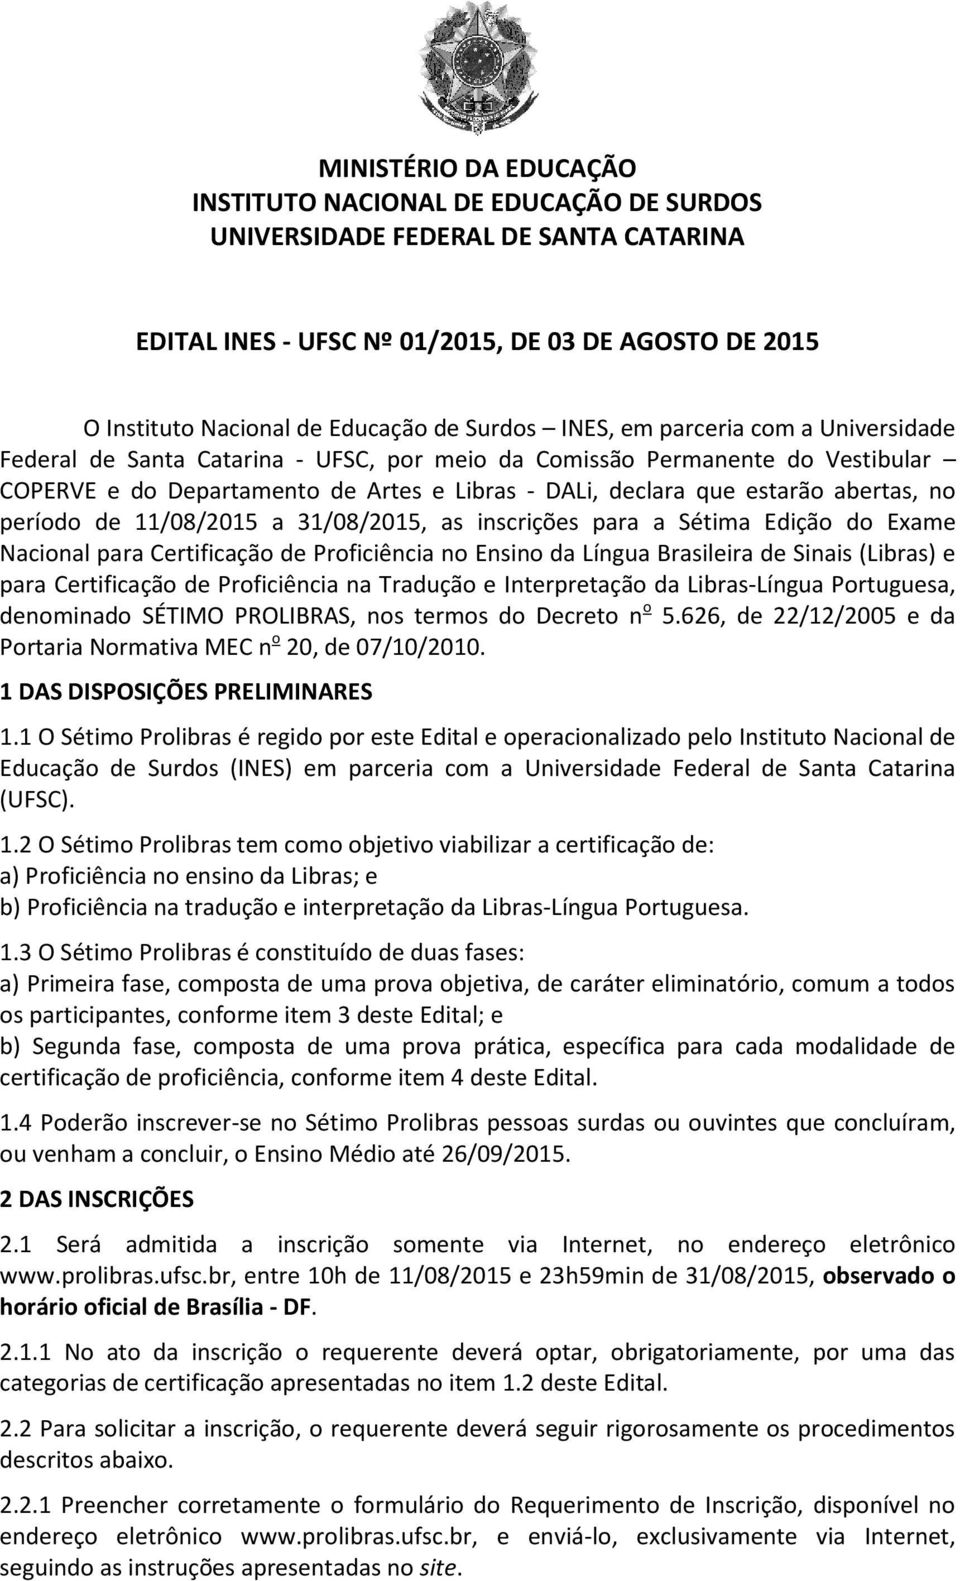 abertas, no período de 11/08/2015 a 31/08/2015, as inscrições para a Sétima Edição do Exame Nacional para Certificação de Proficiência no Ensino da Língua Brasileira de Sinais (Libras) e para